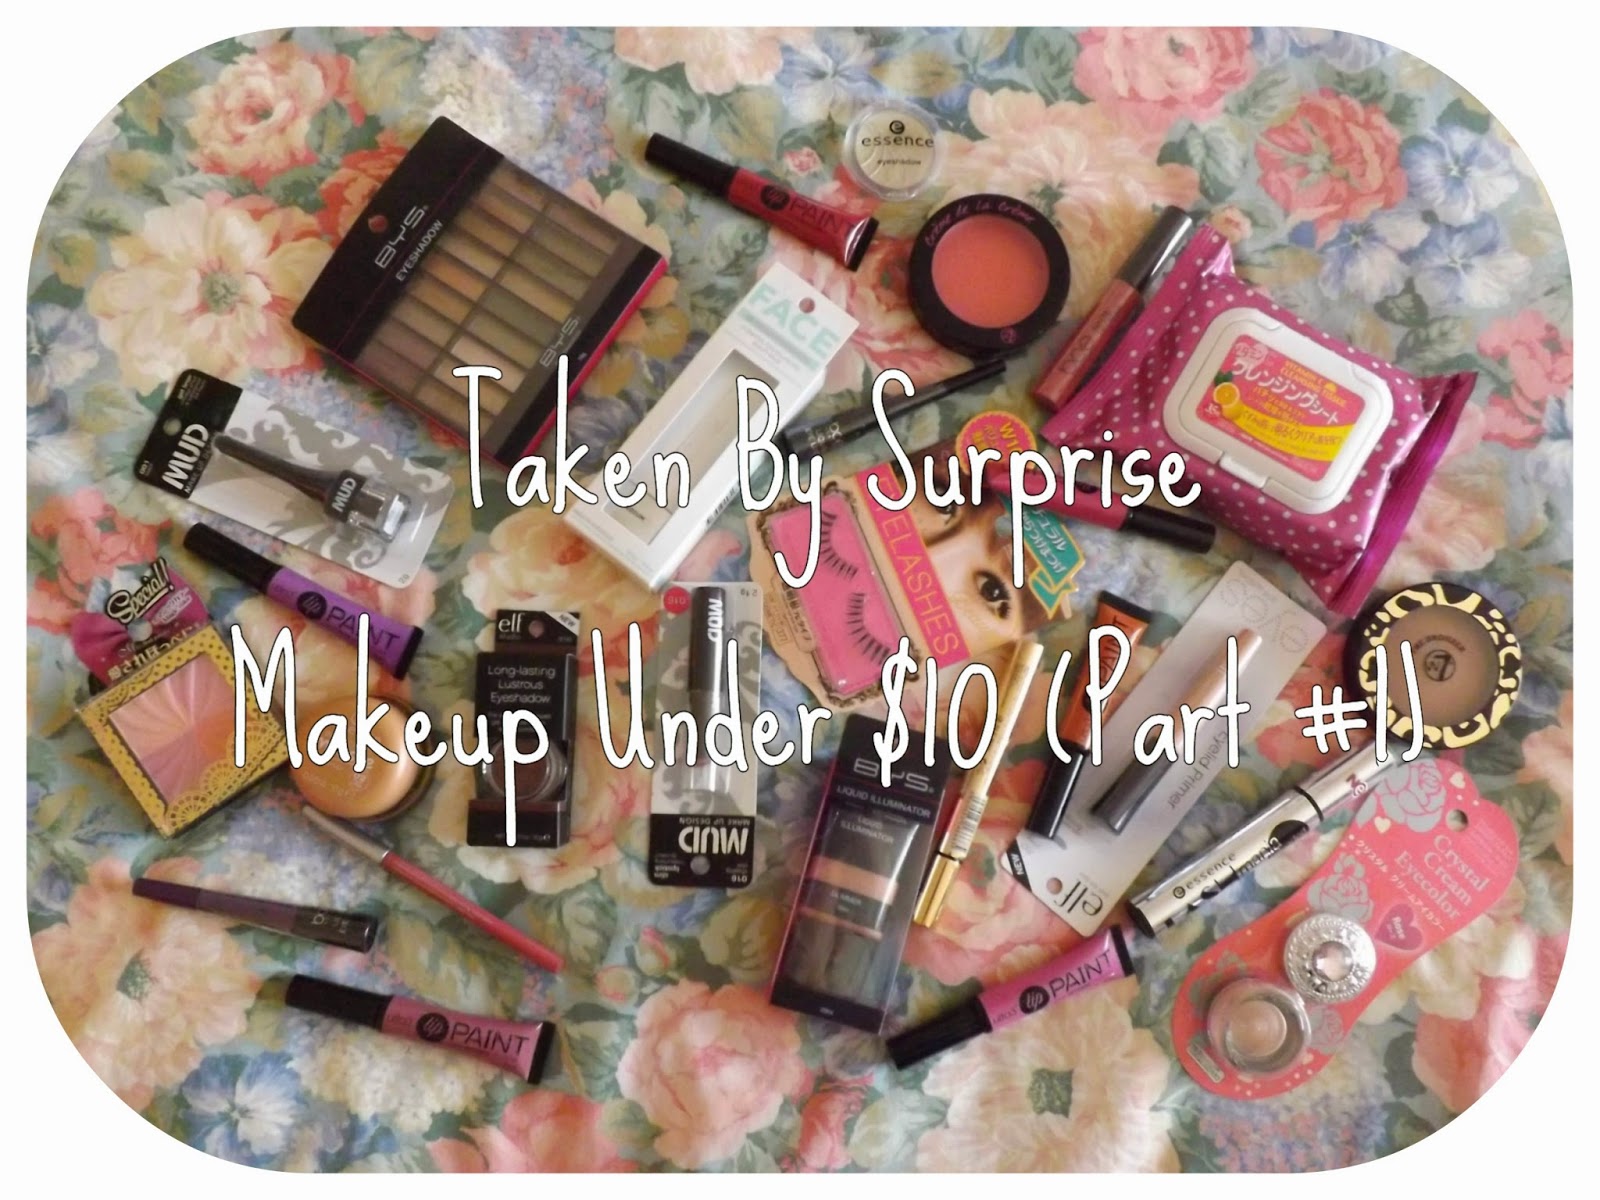 REVIEW: Makeup Under $10 (Part #1) - Daiso, ulta3 & FACE